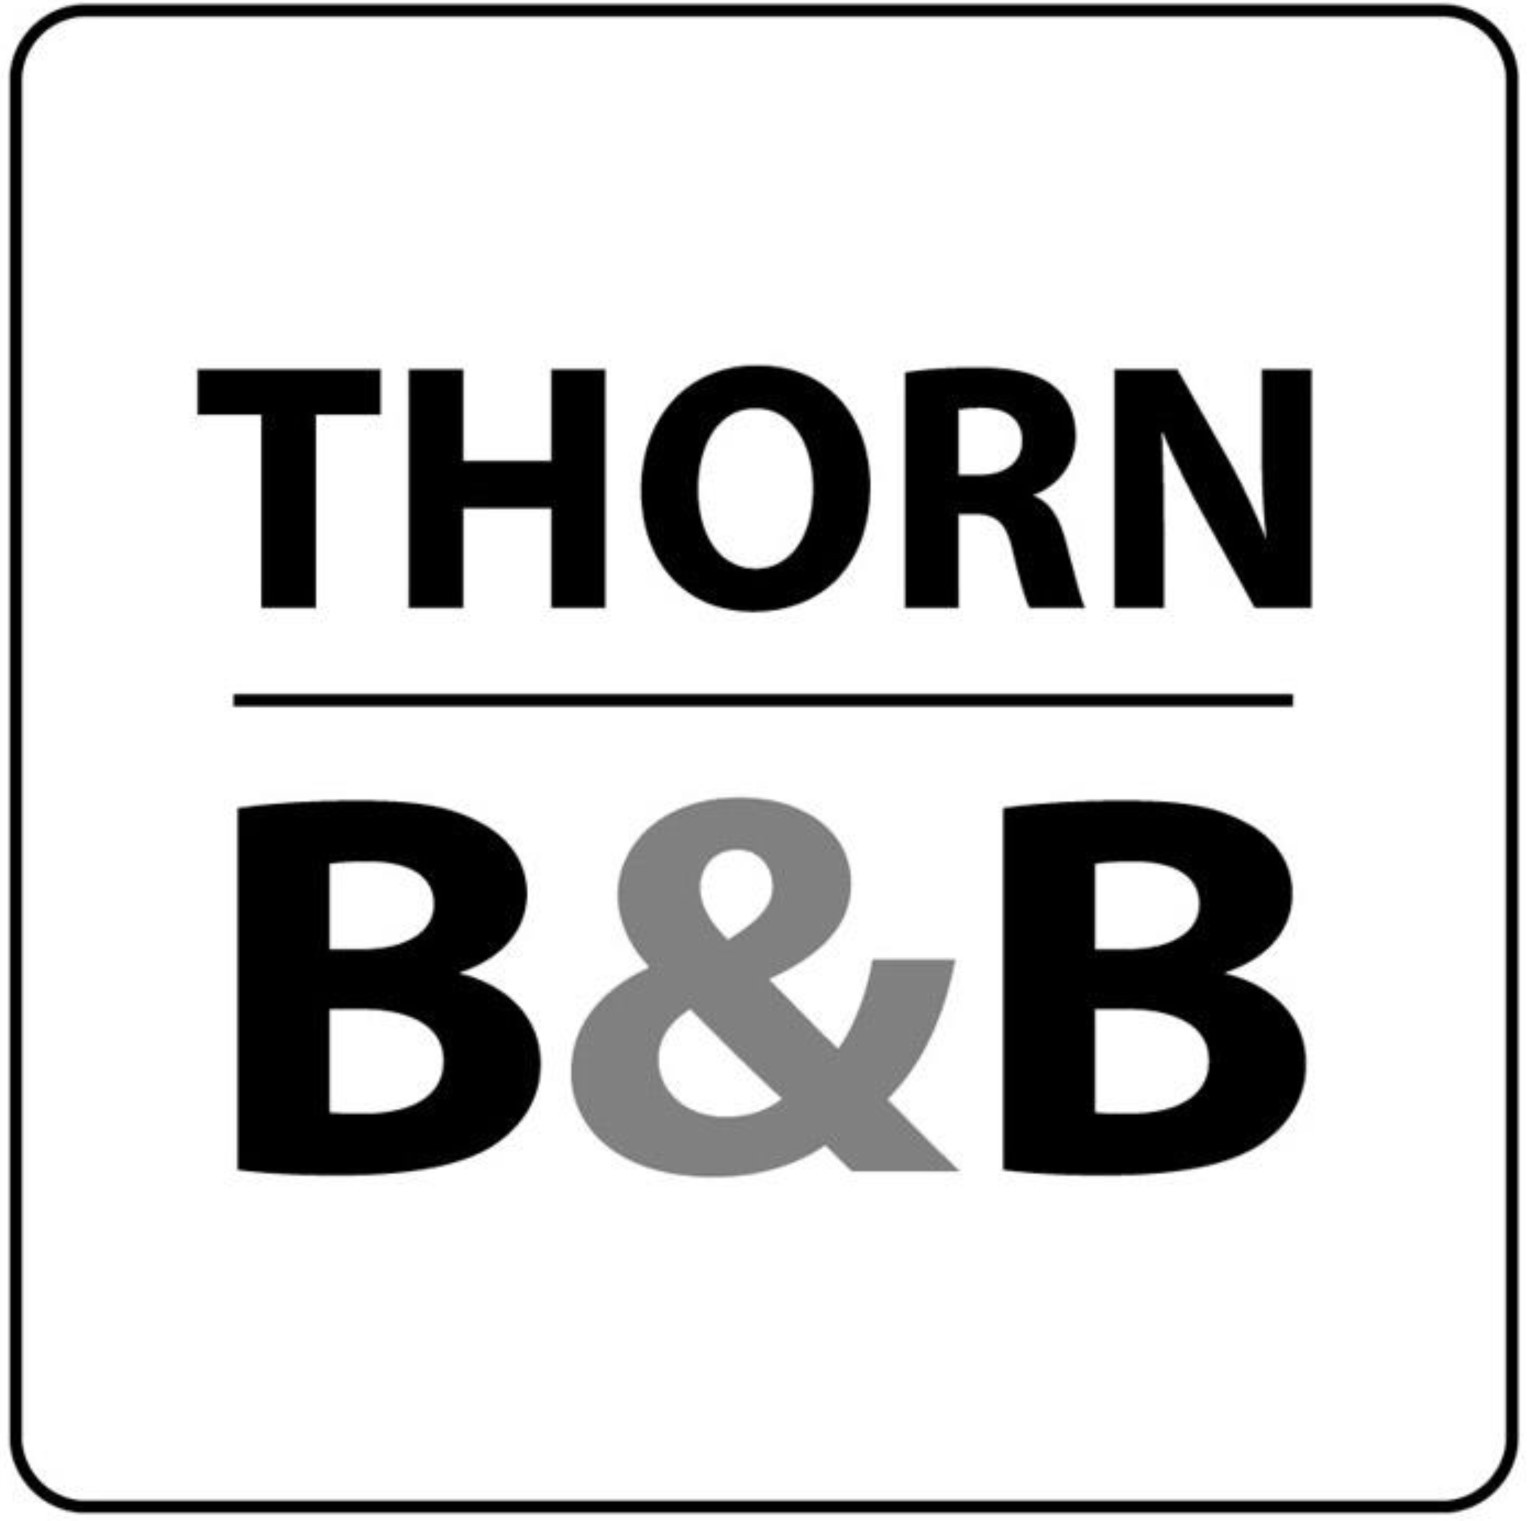 Thorn B&B